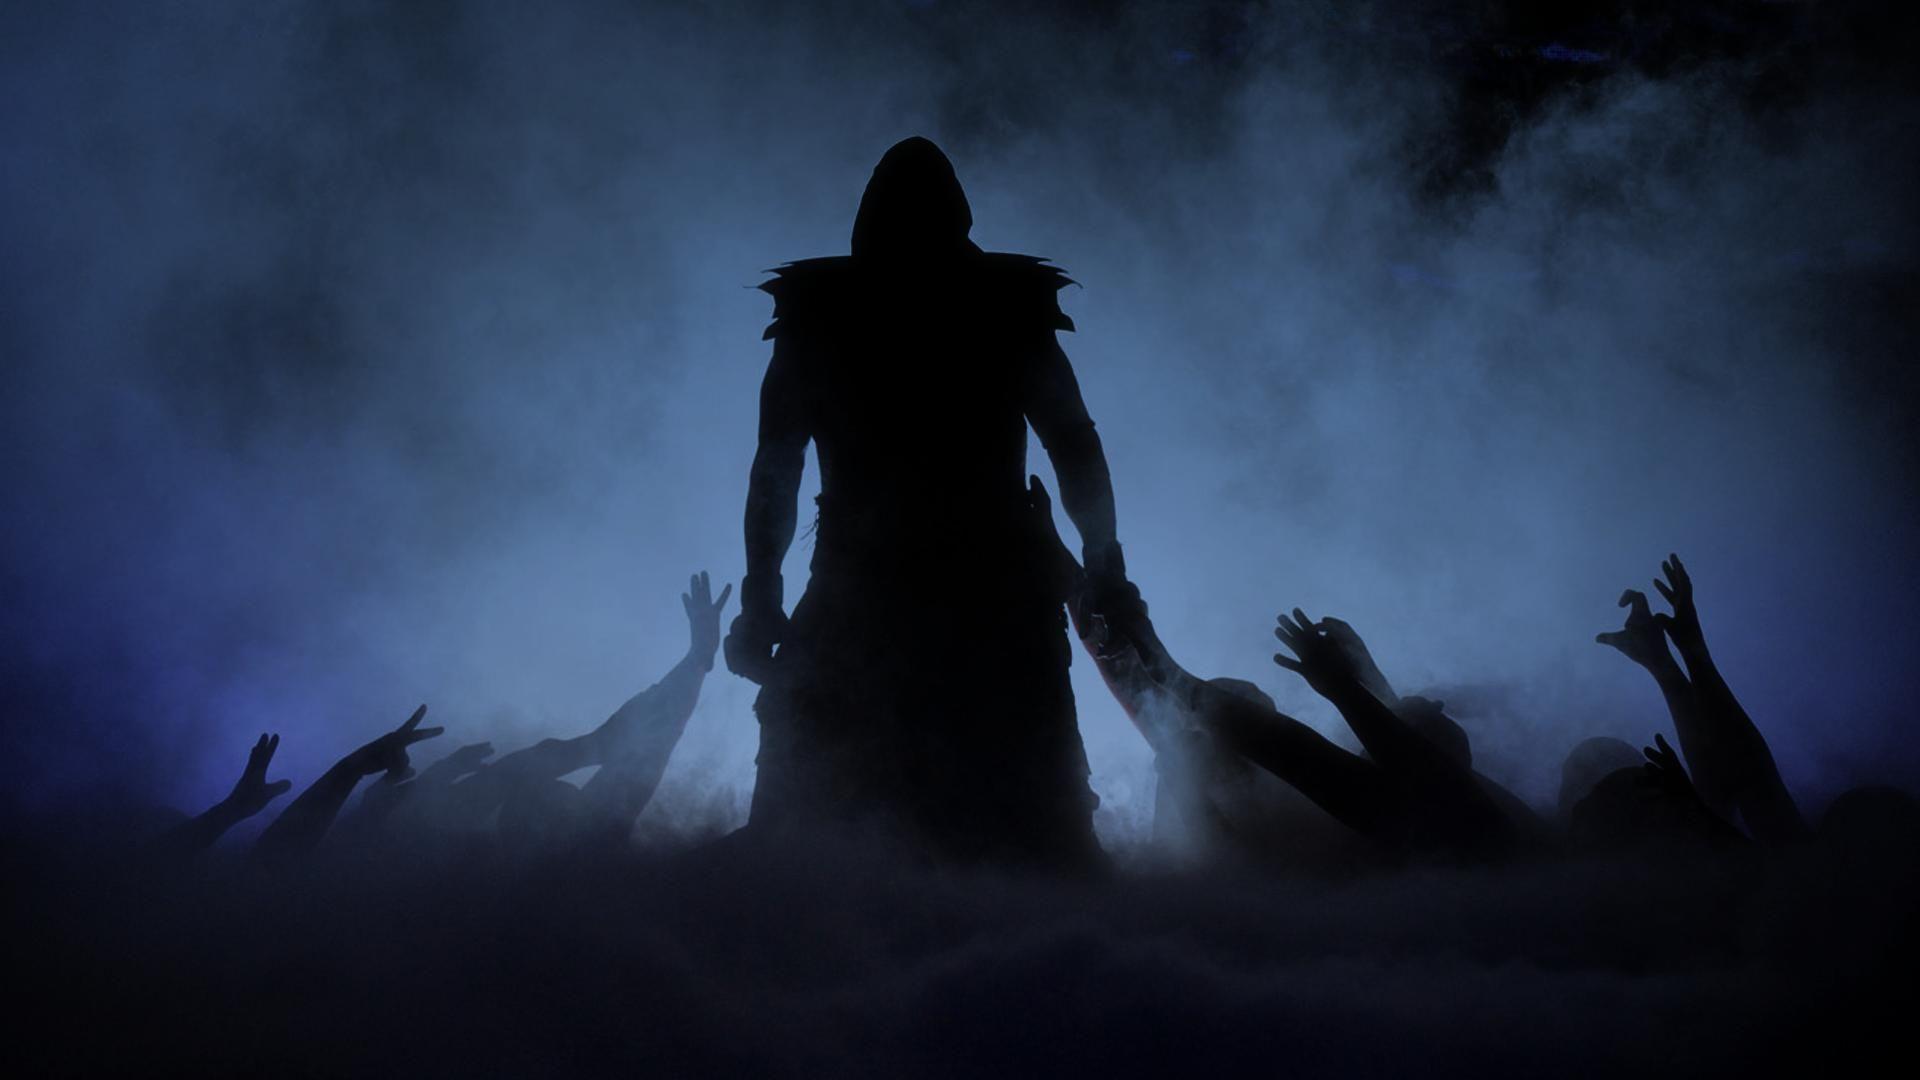 Undertaker 2013 2013 wrestling wwe undertaker horror HD wallpaper   Peakpx